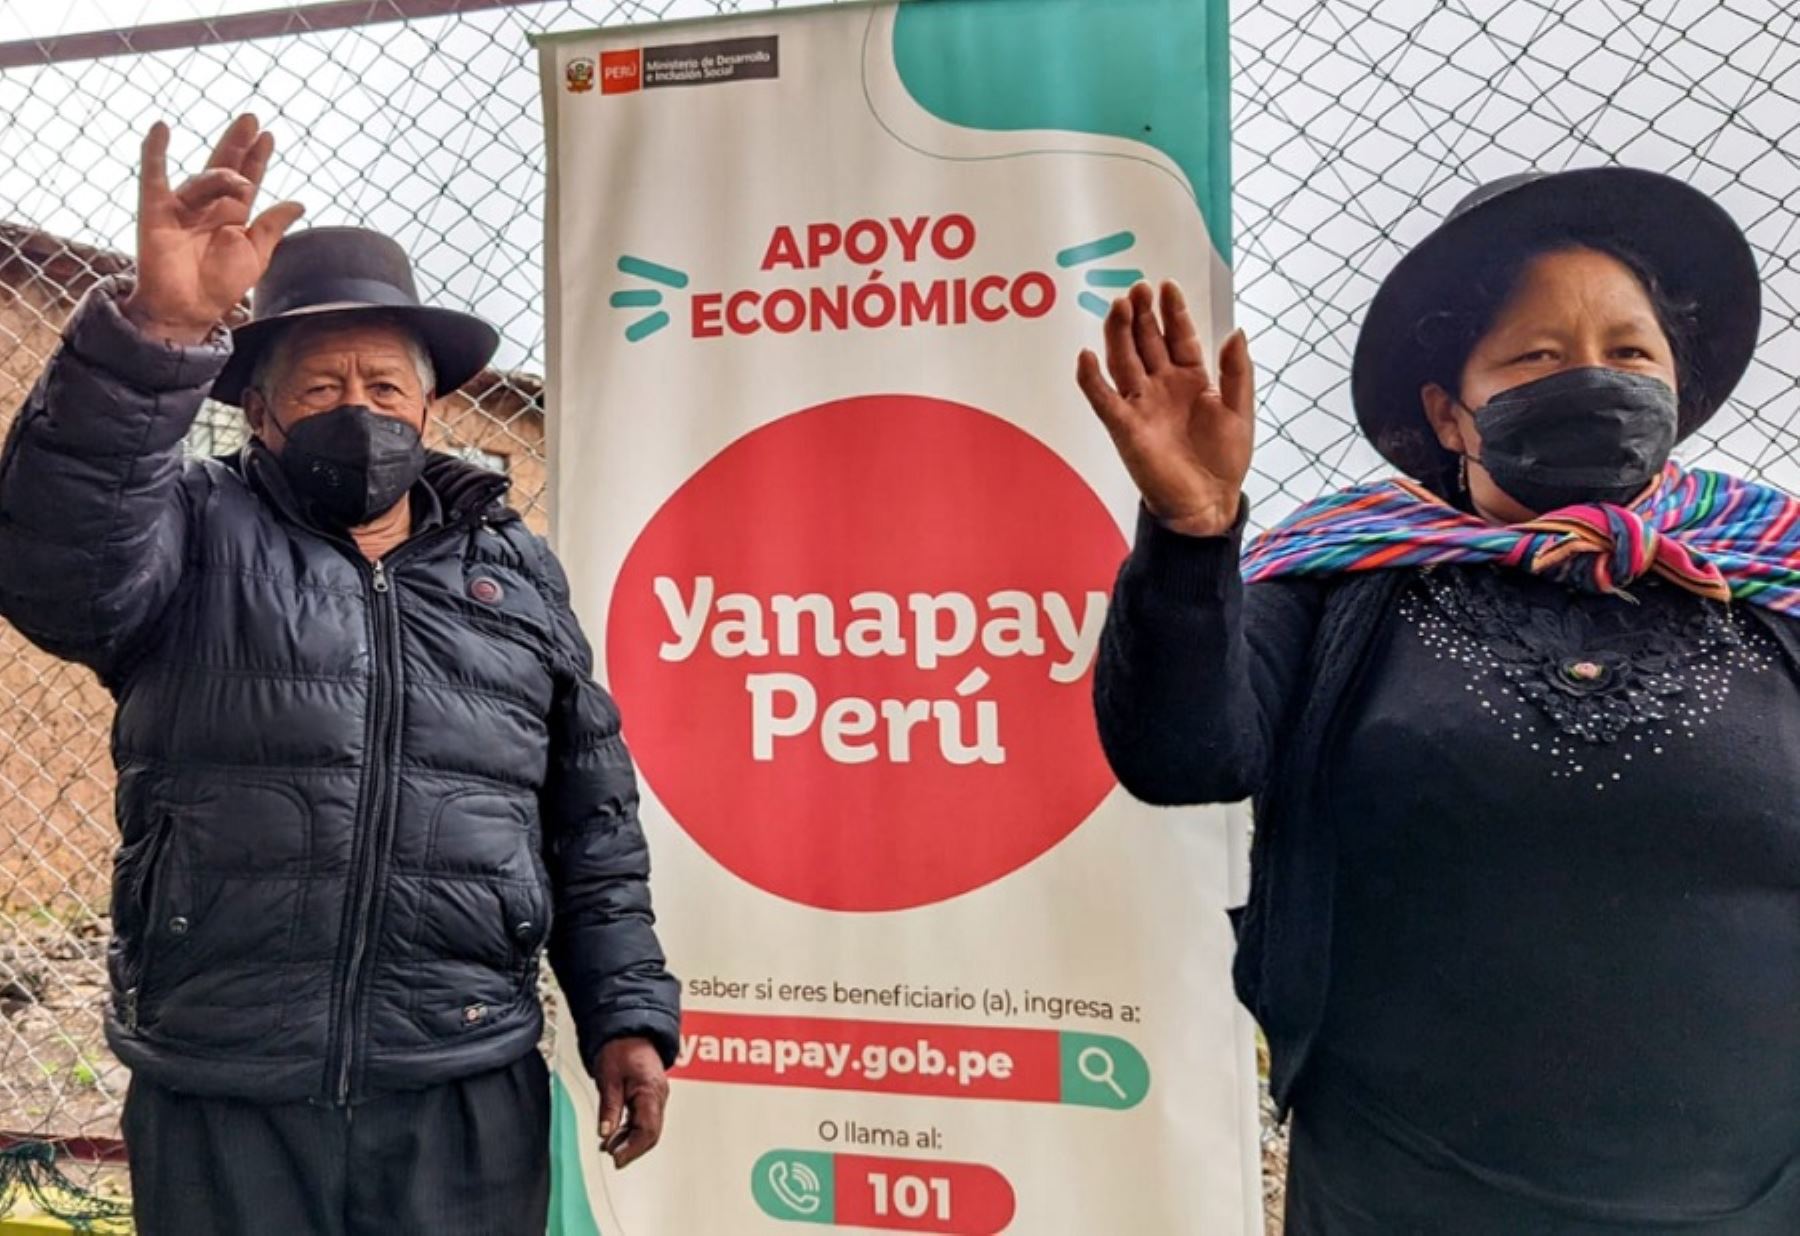 En lo que va del año, más de 343,000 consultas sobre el subsidio económico Yanapay Perú fueron atendidas por los especialistas de la línea social gratuita 101 del Ministerio de Desarrollo e Inclusión Social.